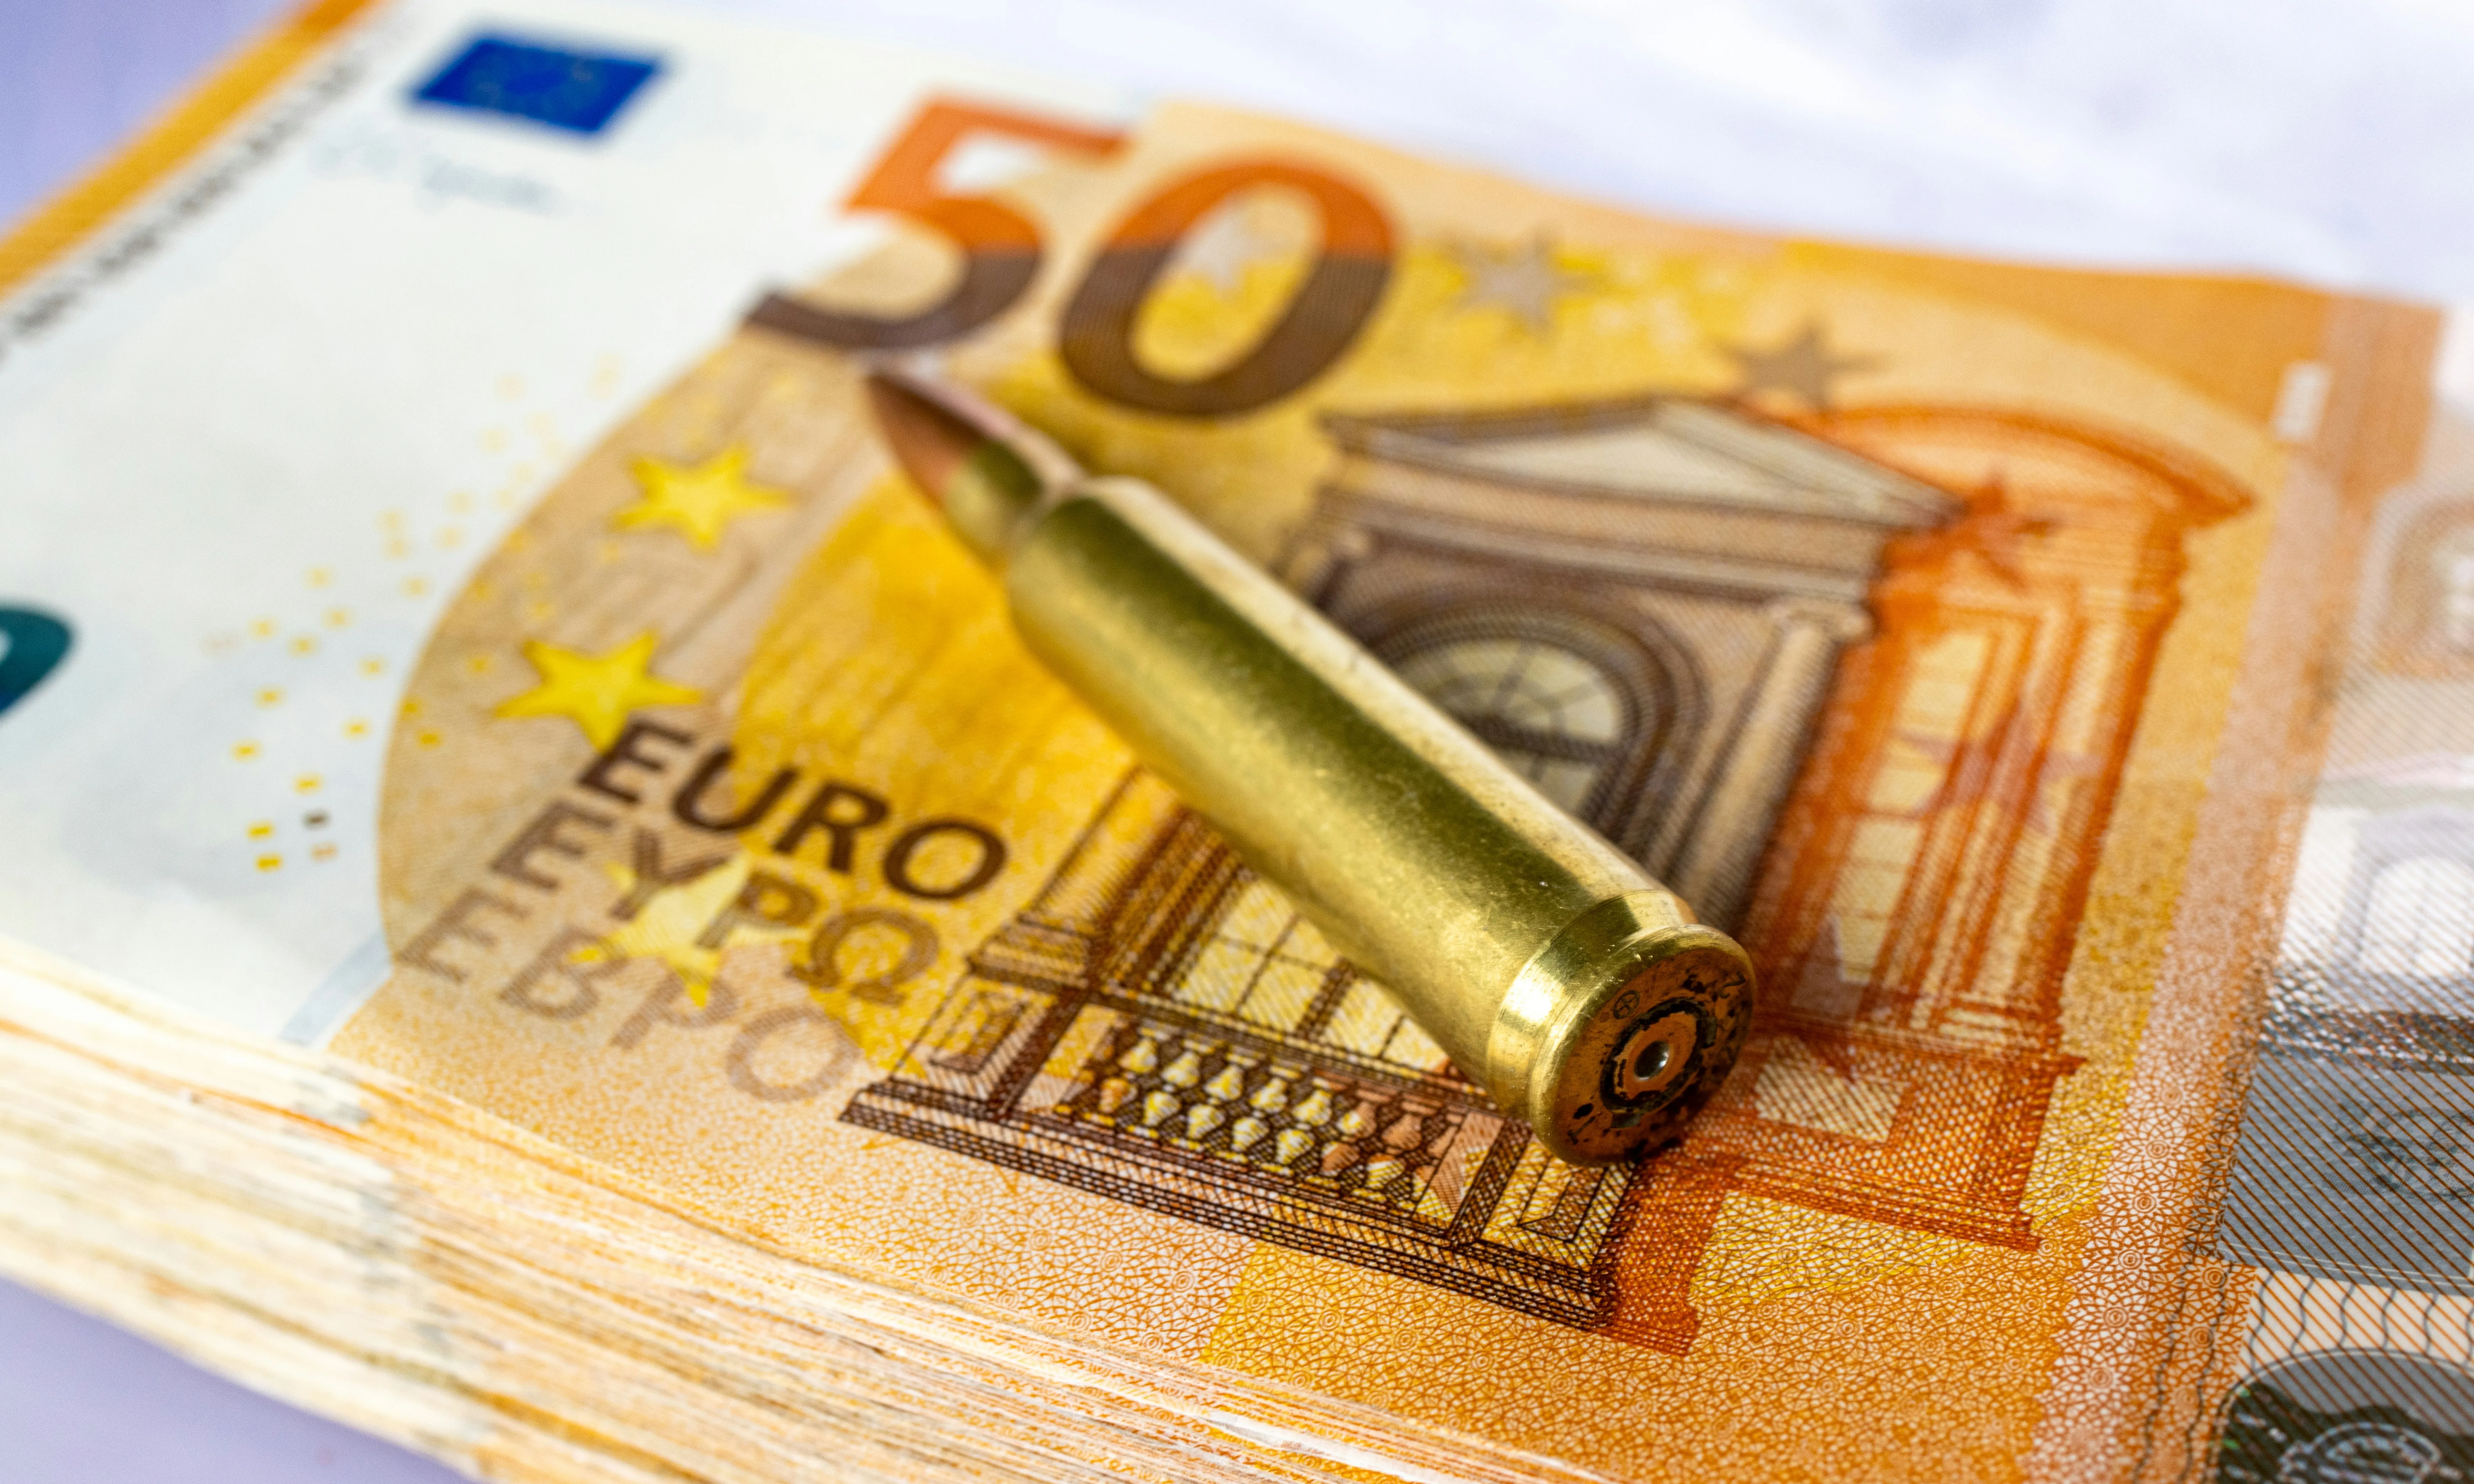 Des del 7 d’octubre, el Govern espanyol ha aprovat la compra d’armament israelià per més de mil milions d’euros.